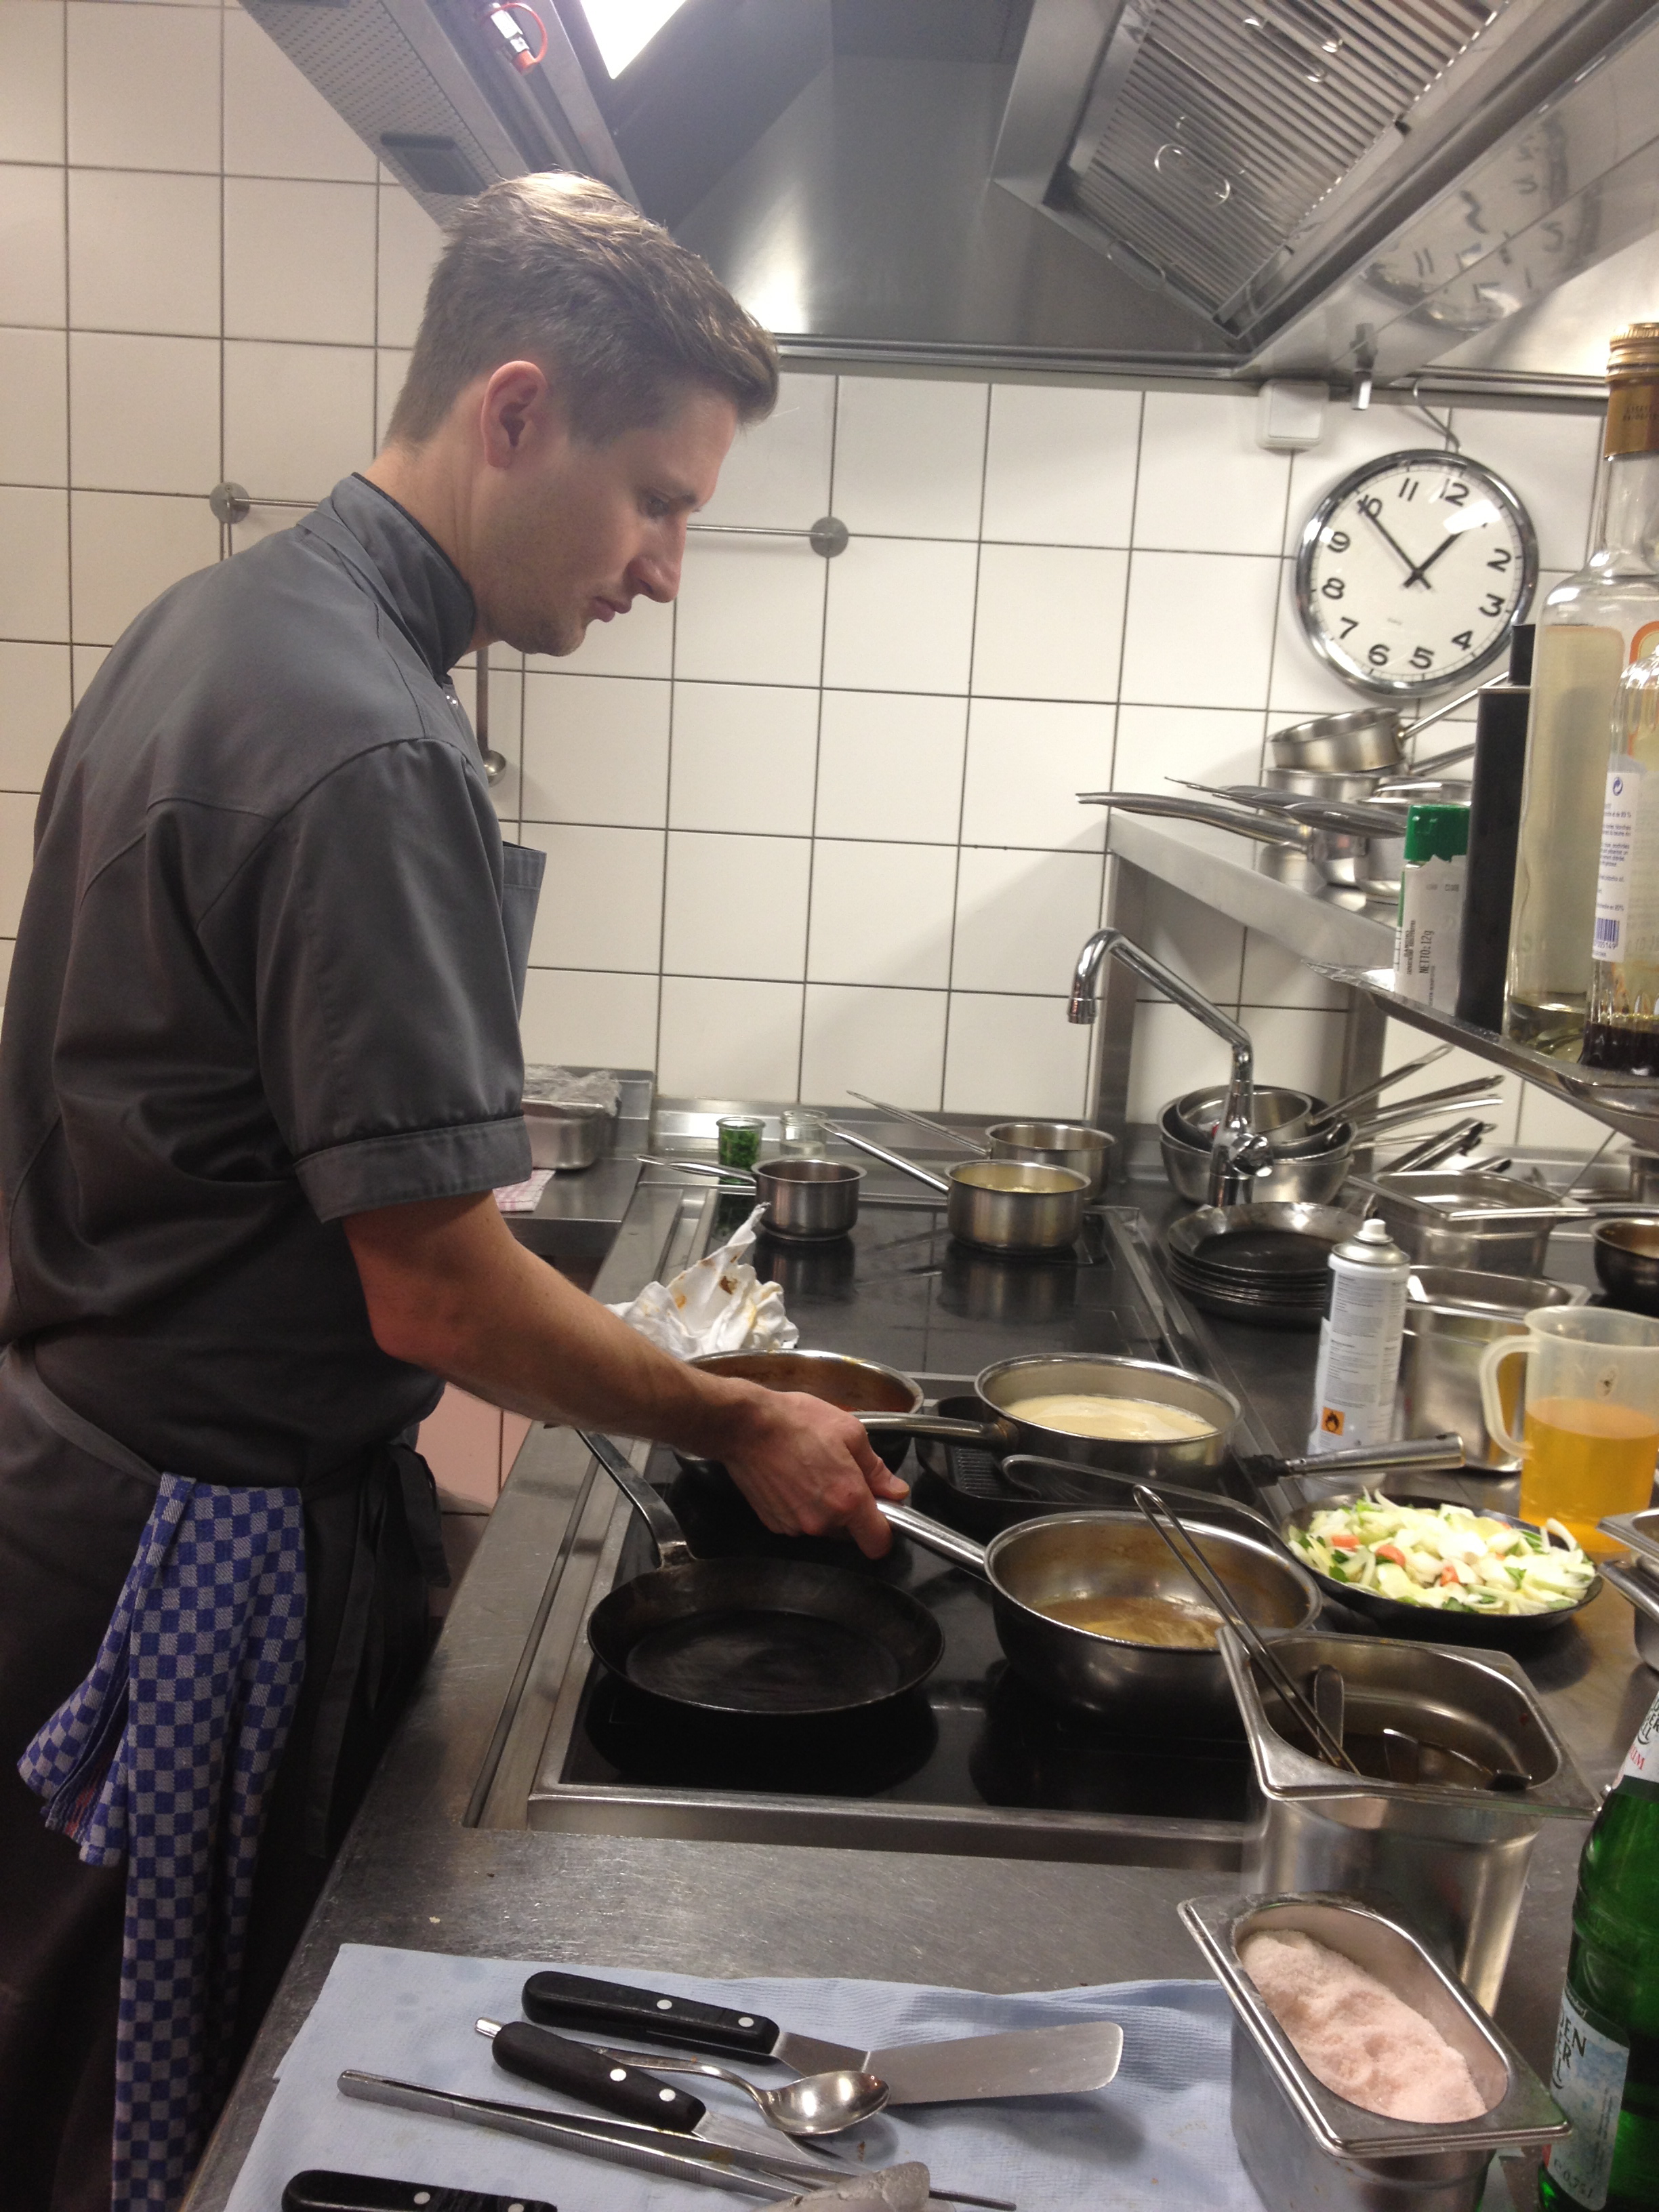  Michael Kempf in action in der Küche des Facil in Berlin © Valerie Soschynski 